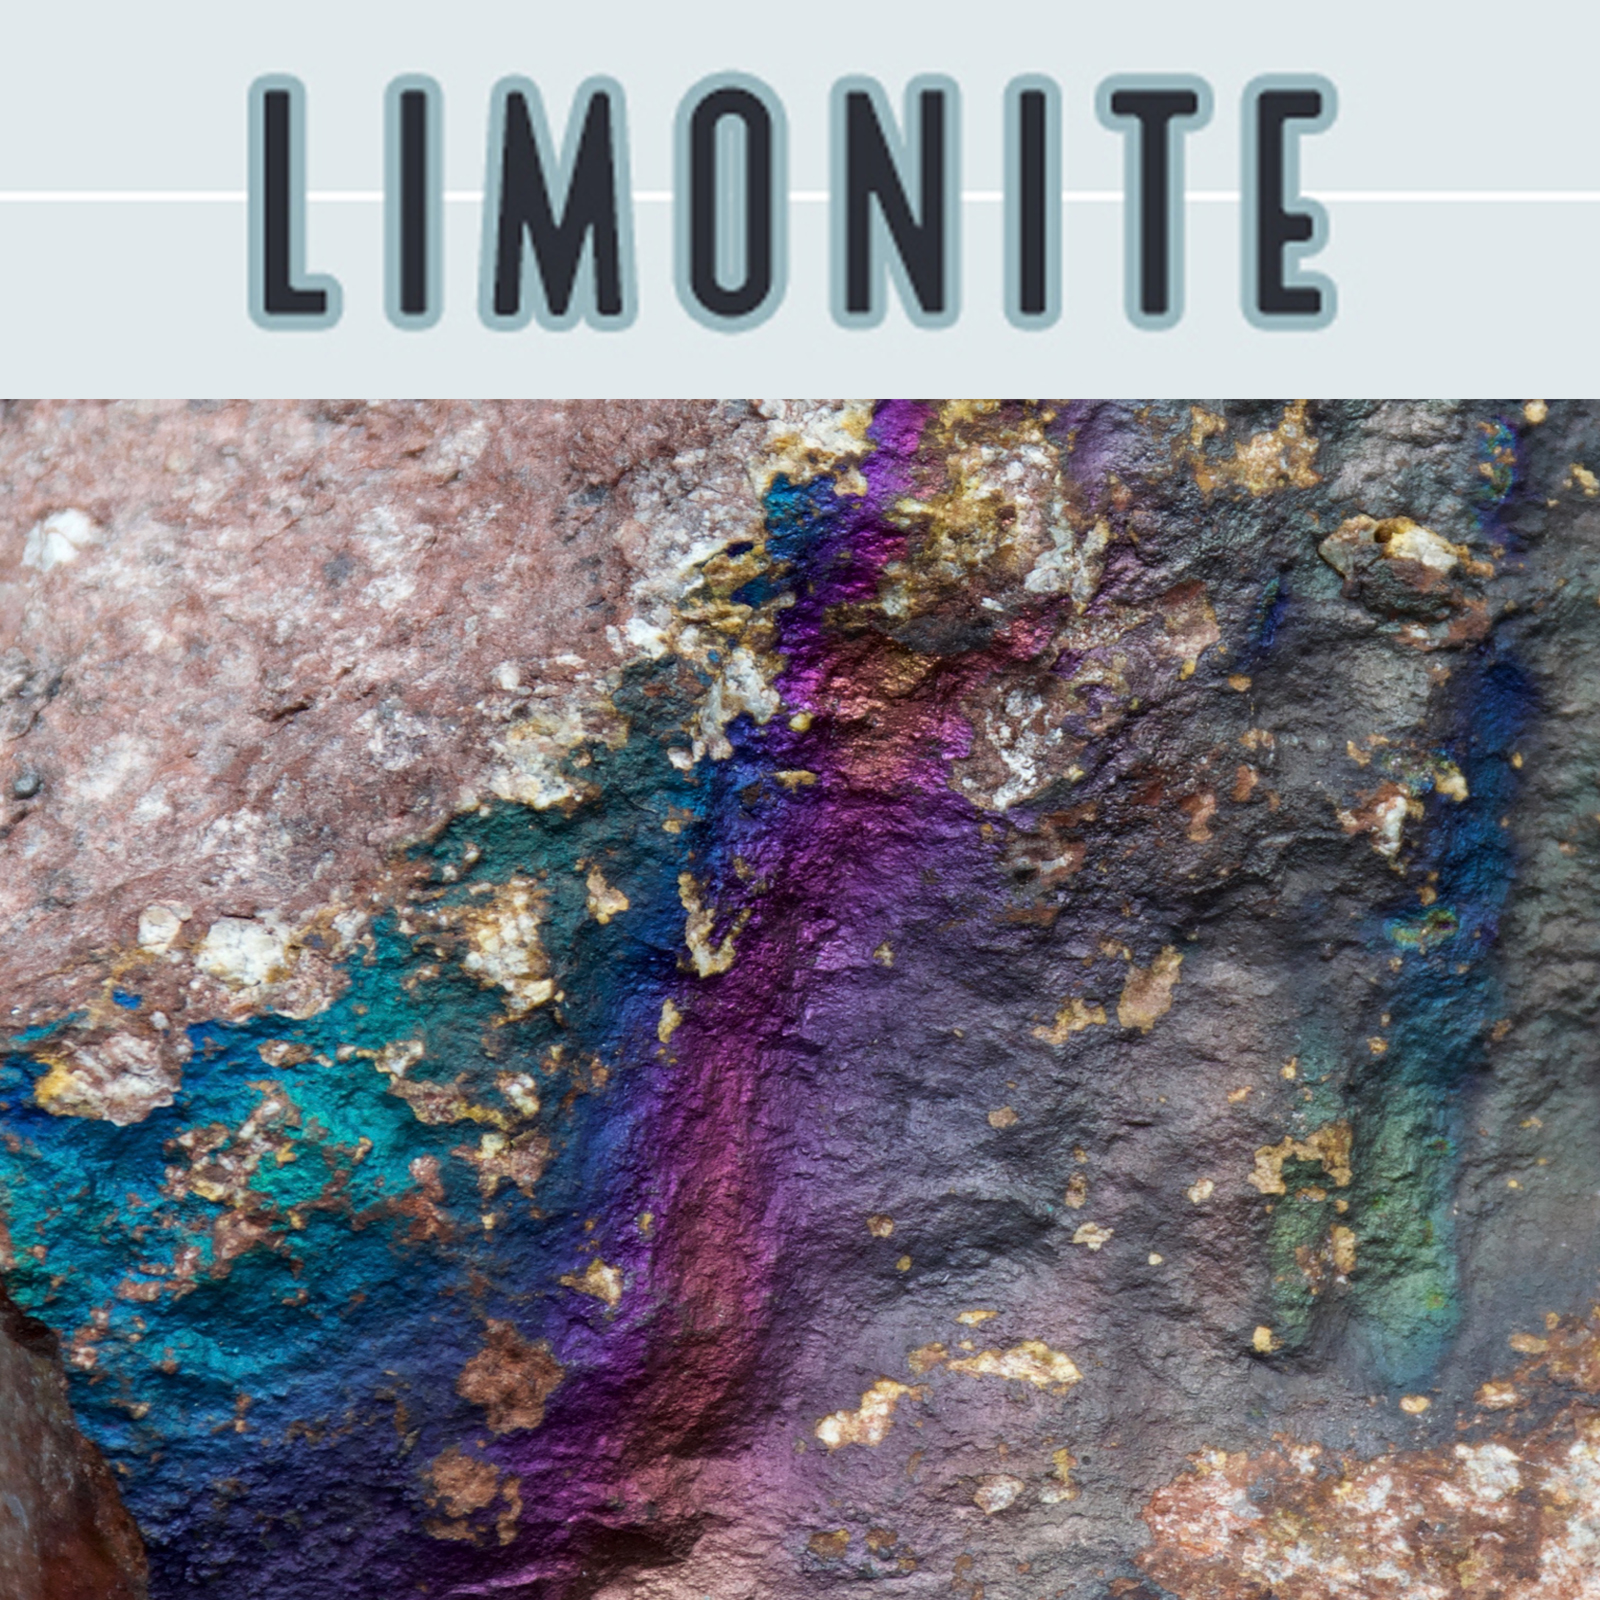 Limonite